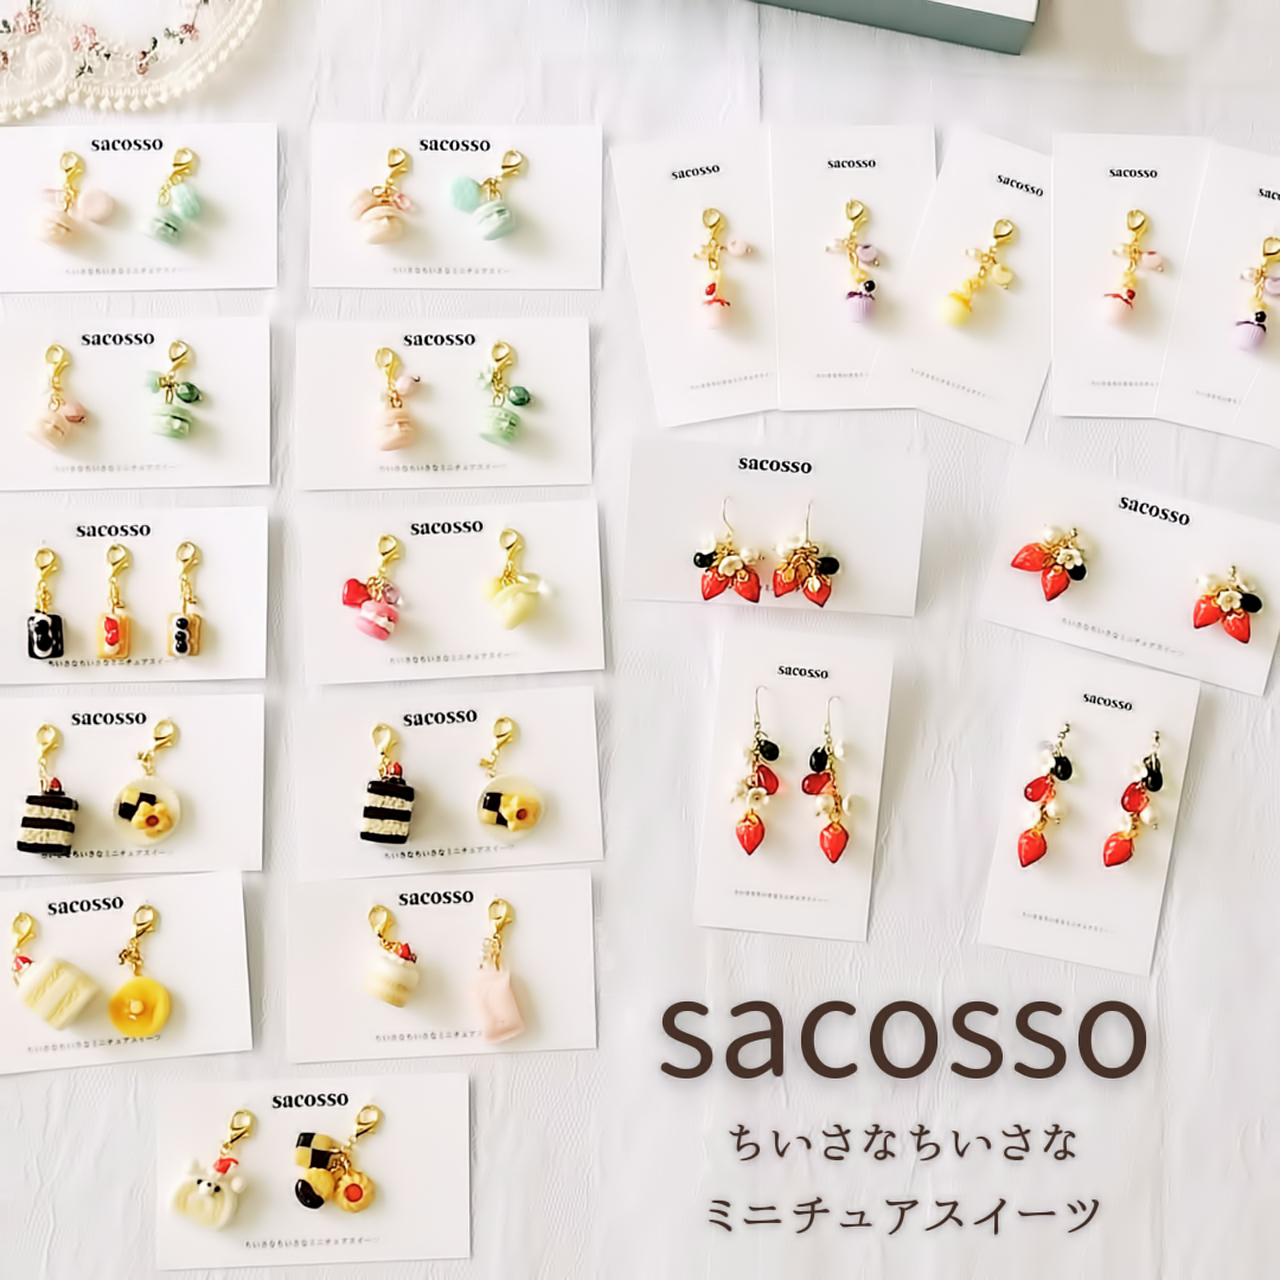 sacosso - サコッソ